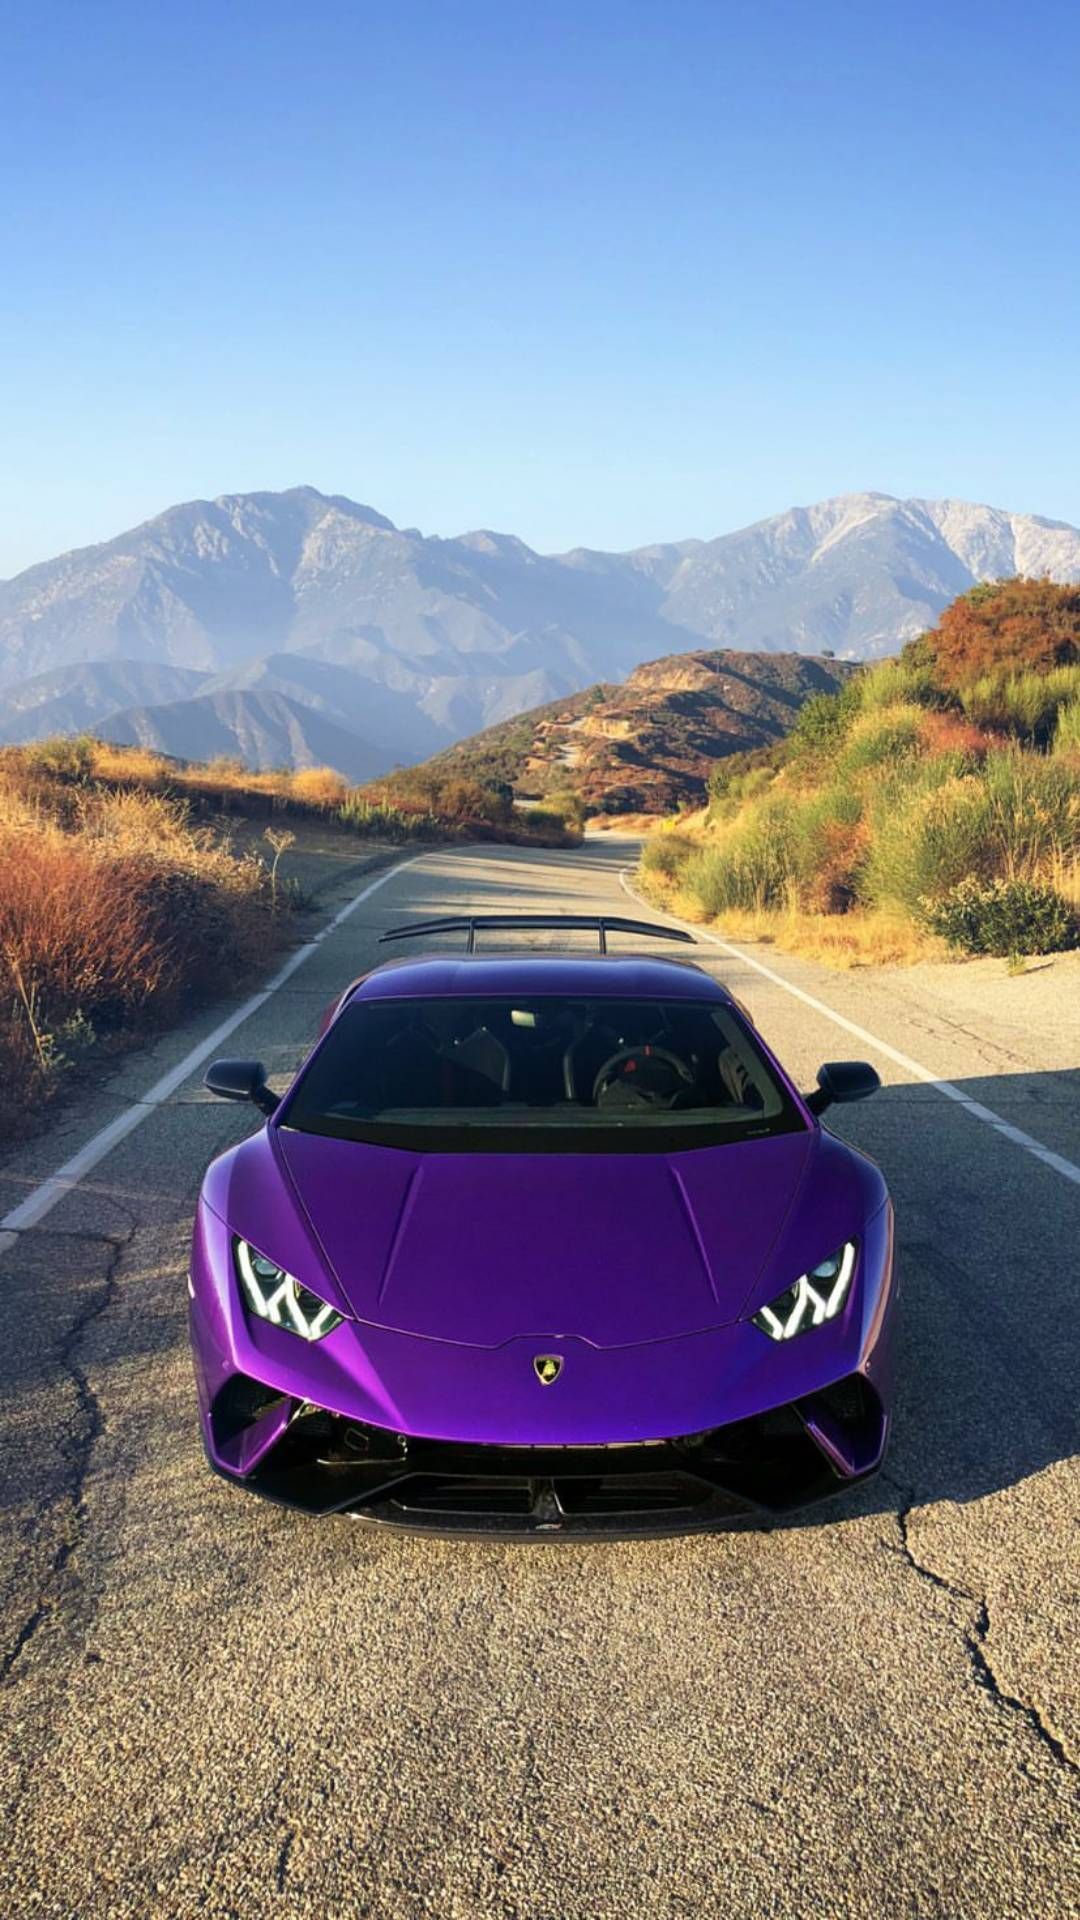 Lamborghini Hintergrundbild 1080x1920. PURPLE Lambo iPhone Wallpaper. Lamborghini cars, Sports car wallpaper, Fast sports cars